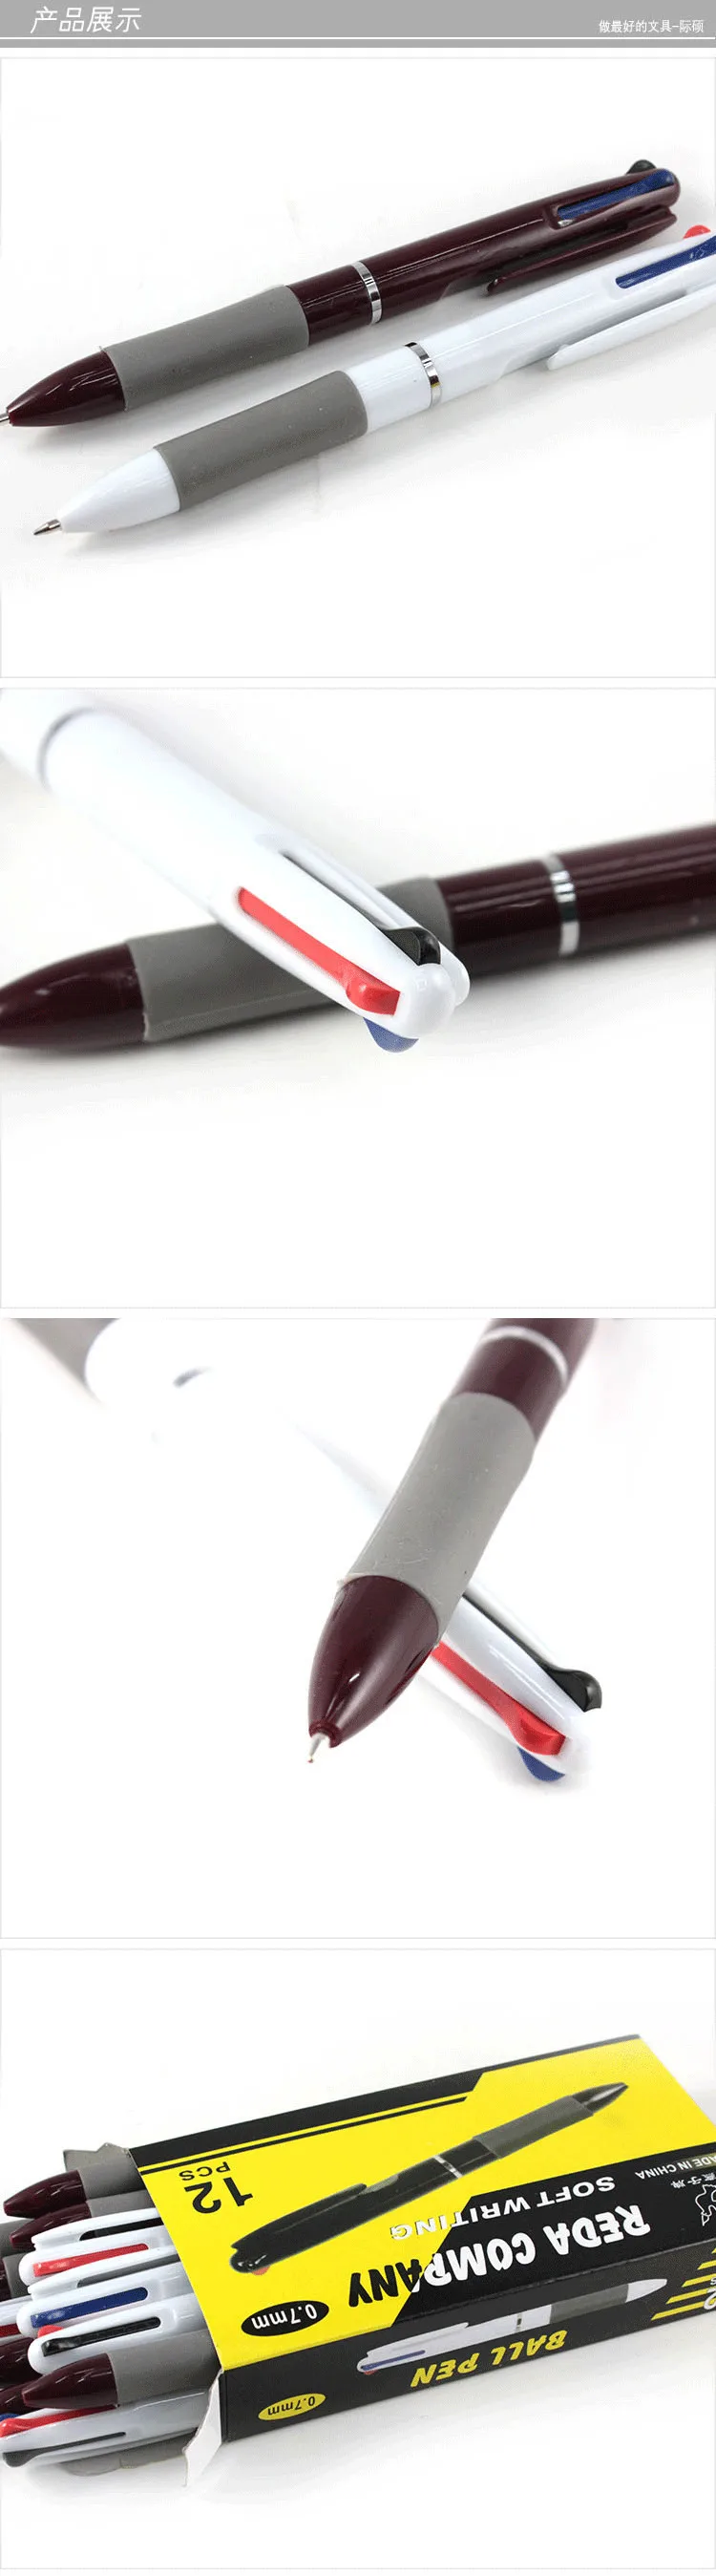 4 шт 3 цвета в 1 многоцветная шариковая ручка ластик 0,7 мм канцелярские принадлежности Canetas Escolar материал для офиса школы Поставщик шариковая ручка